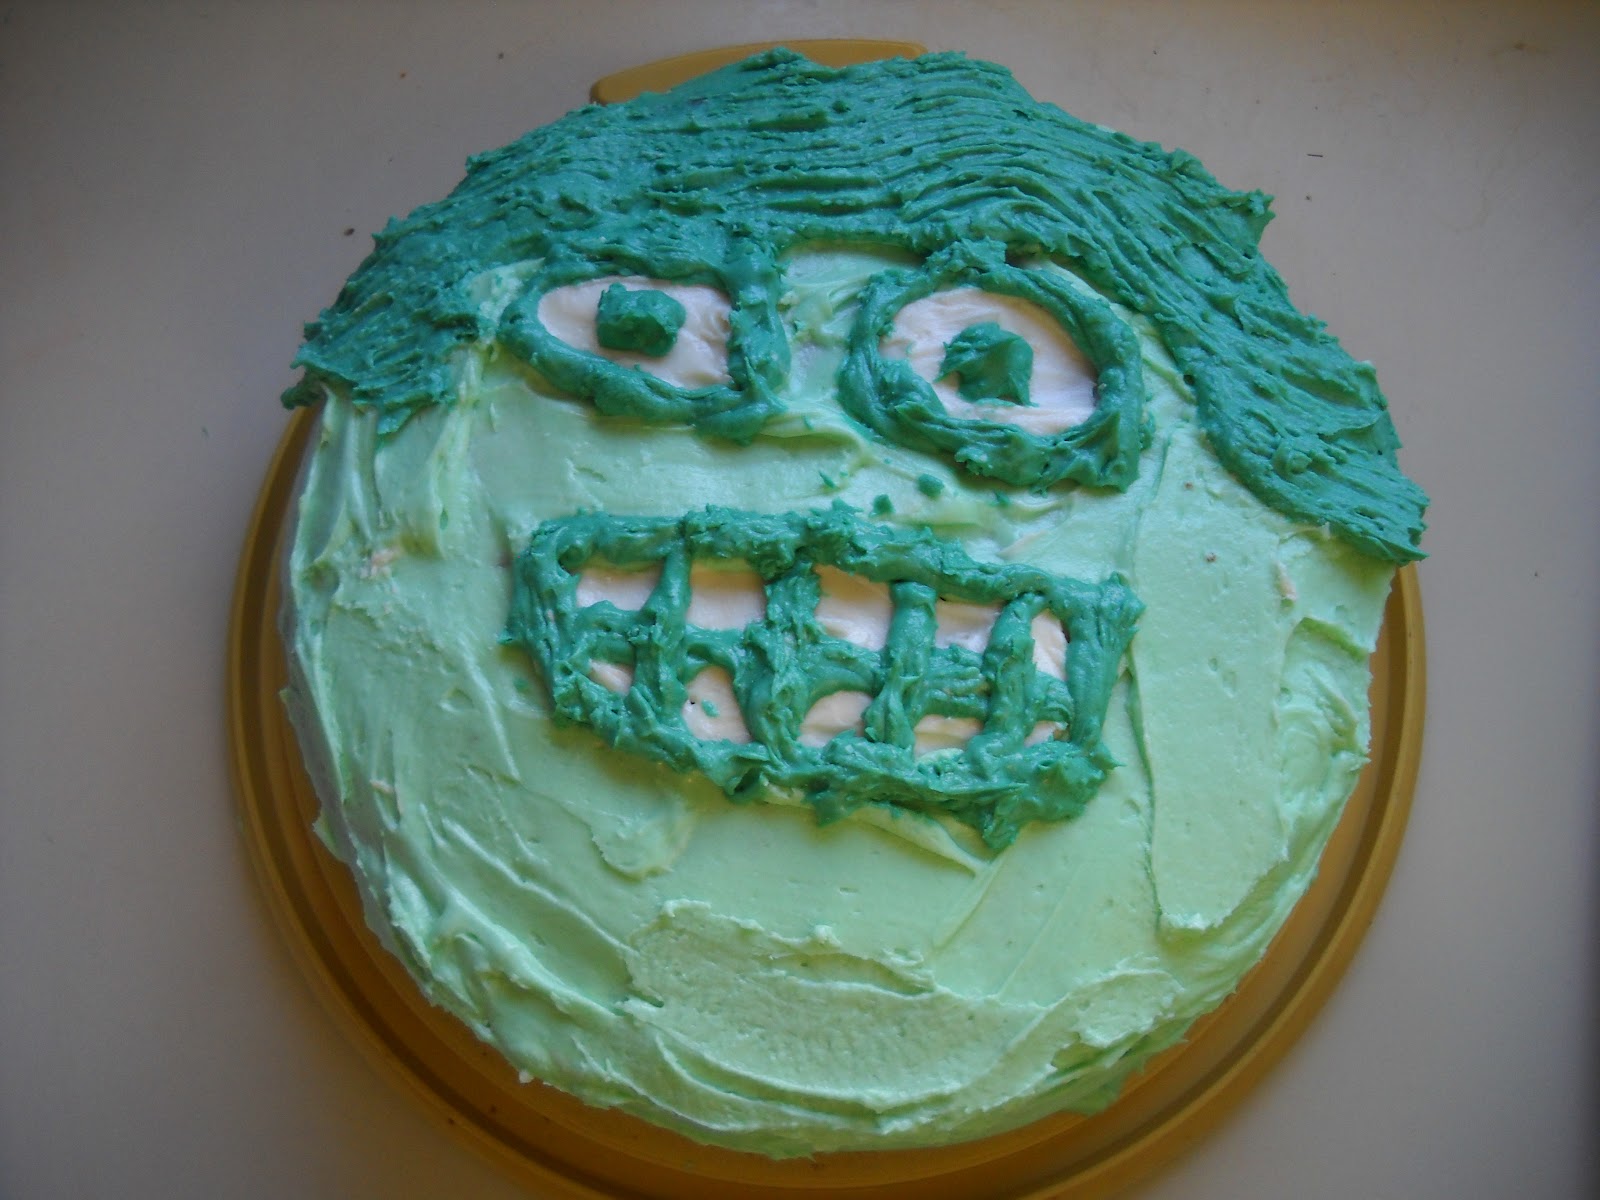 Bad Hulk Cake